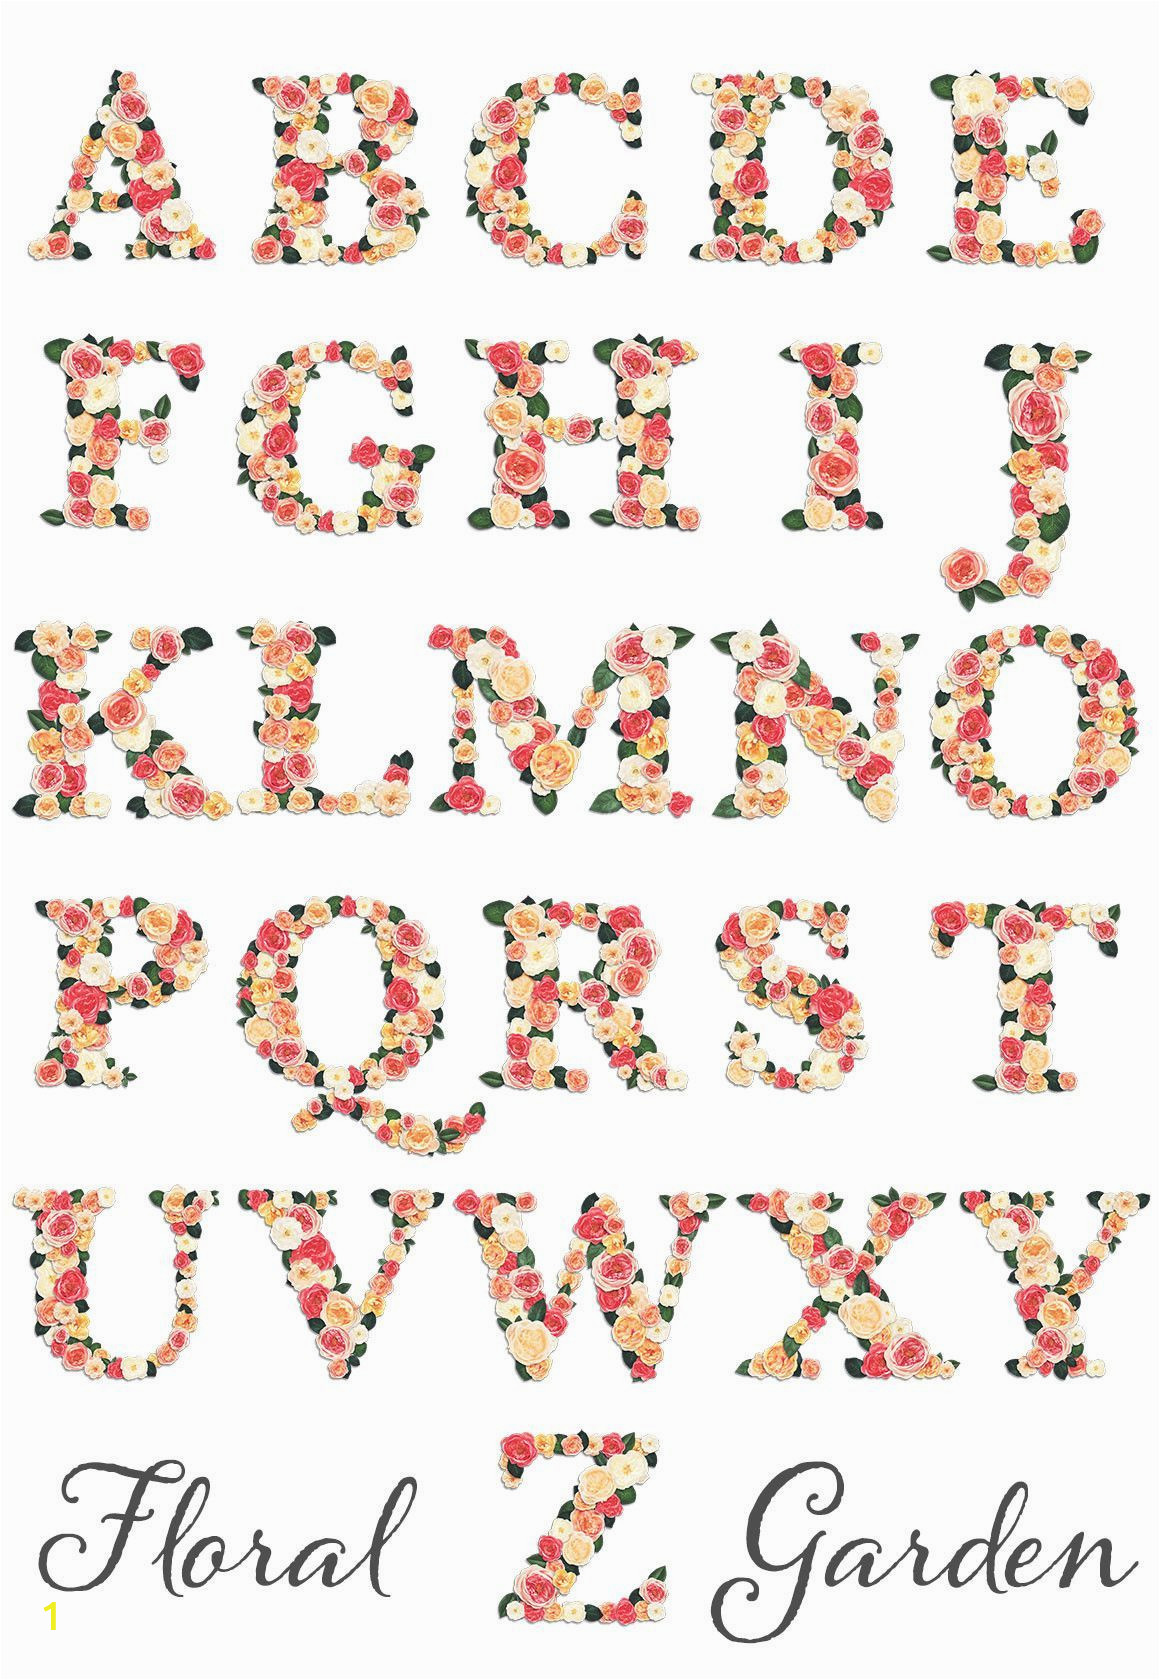 Alphabet Coloring Pages A-z Printable Floral Garden Alphabet Letter Graphics